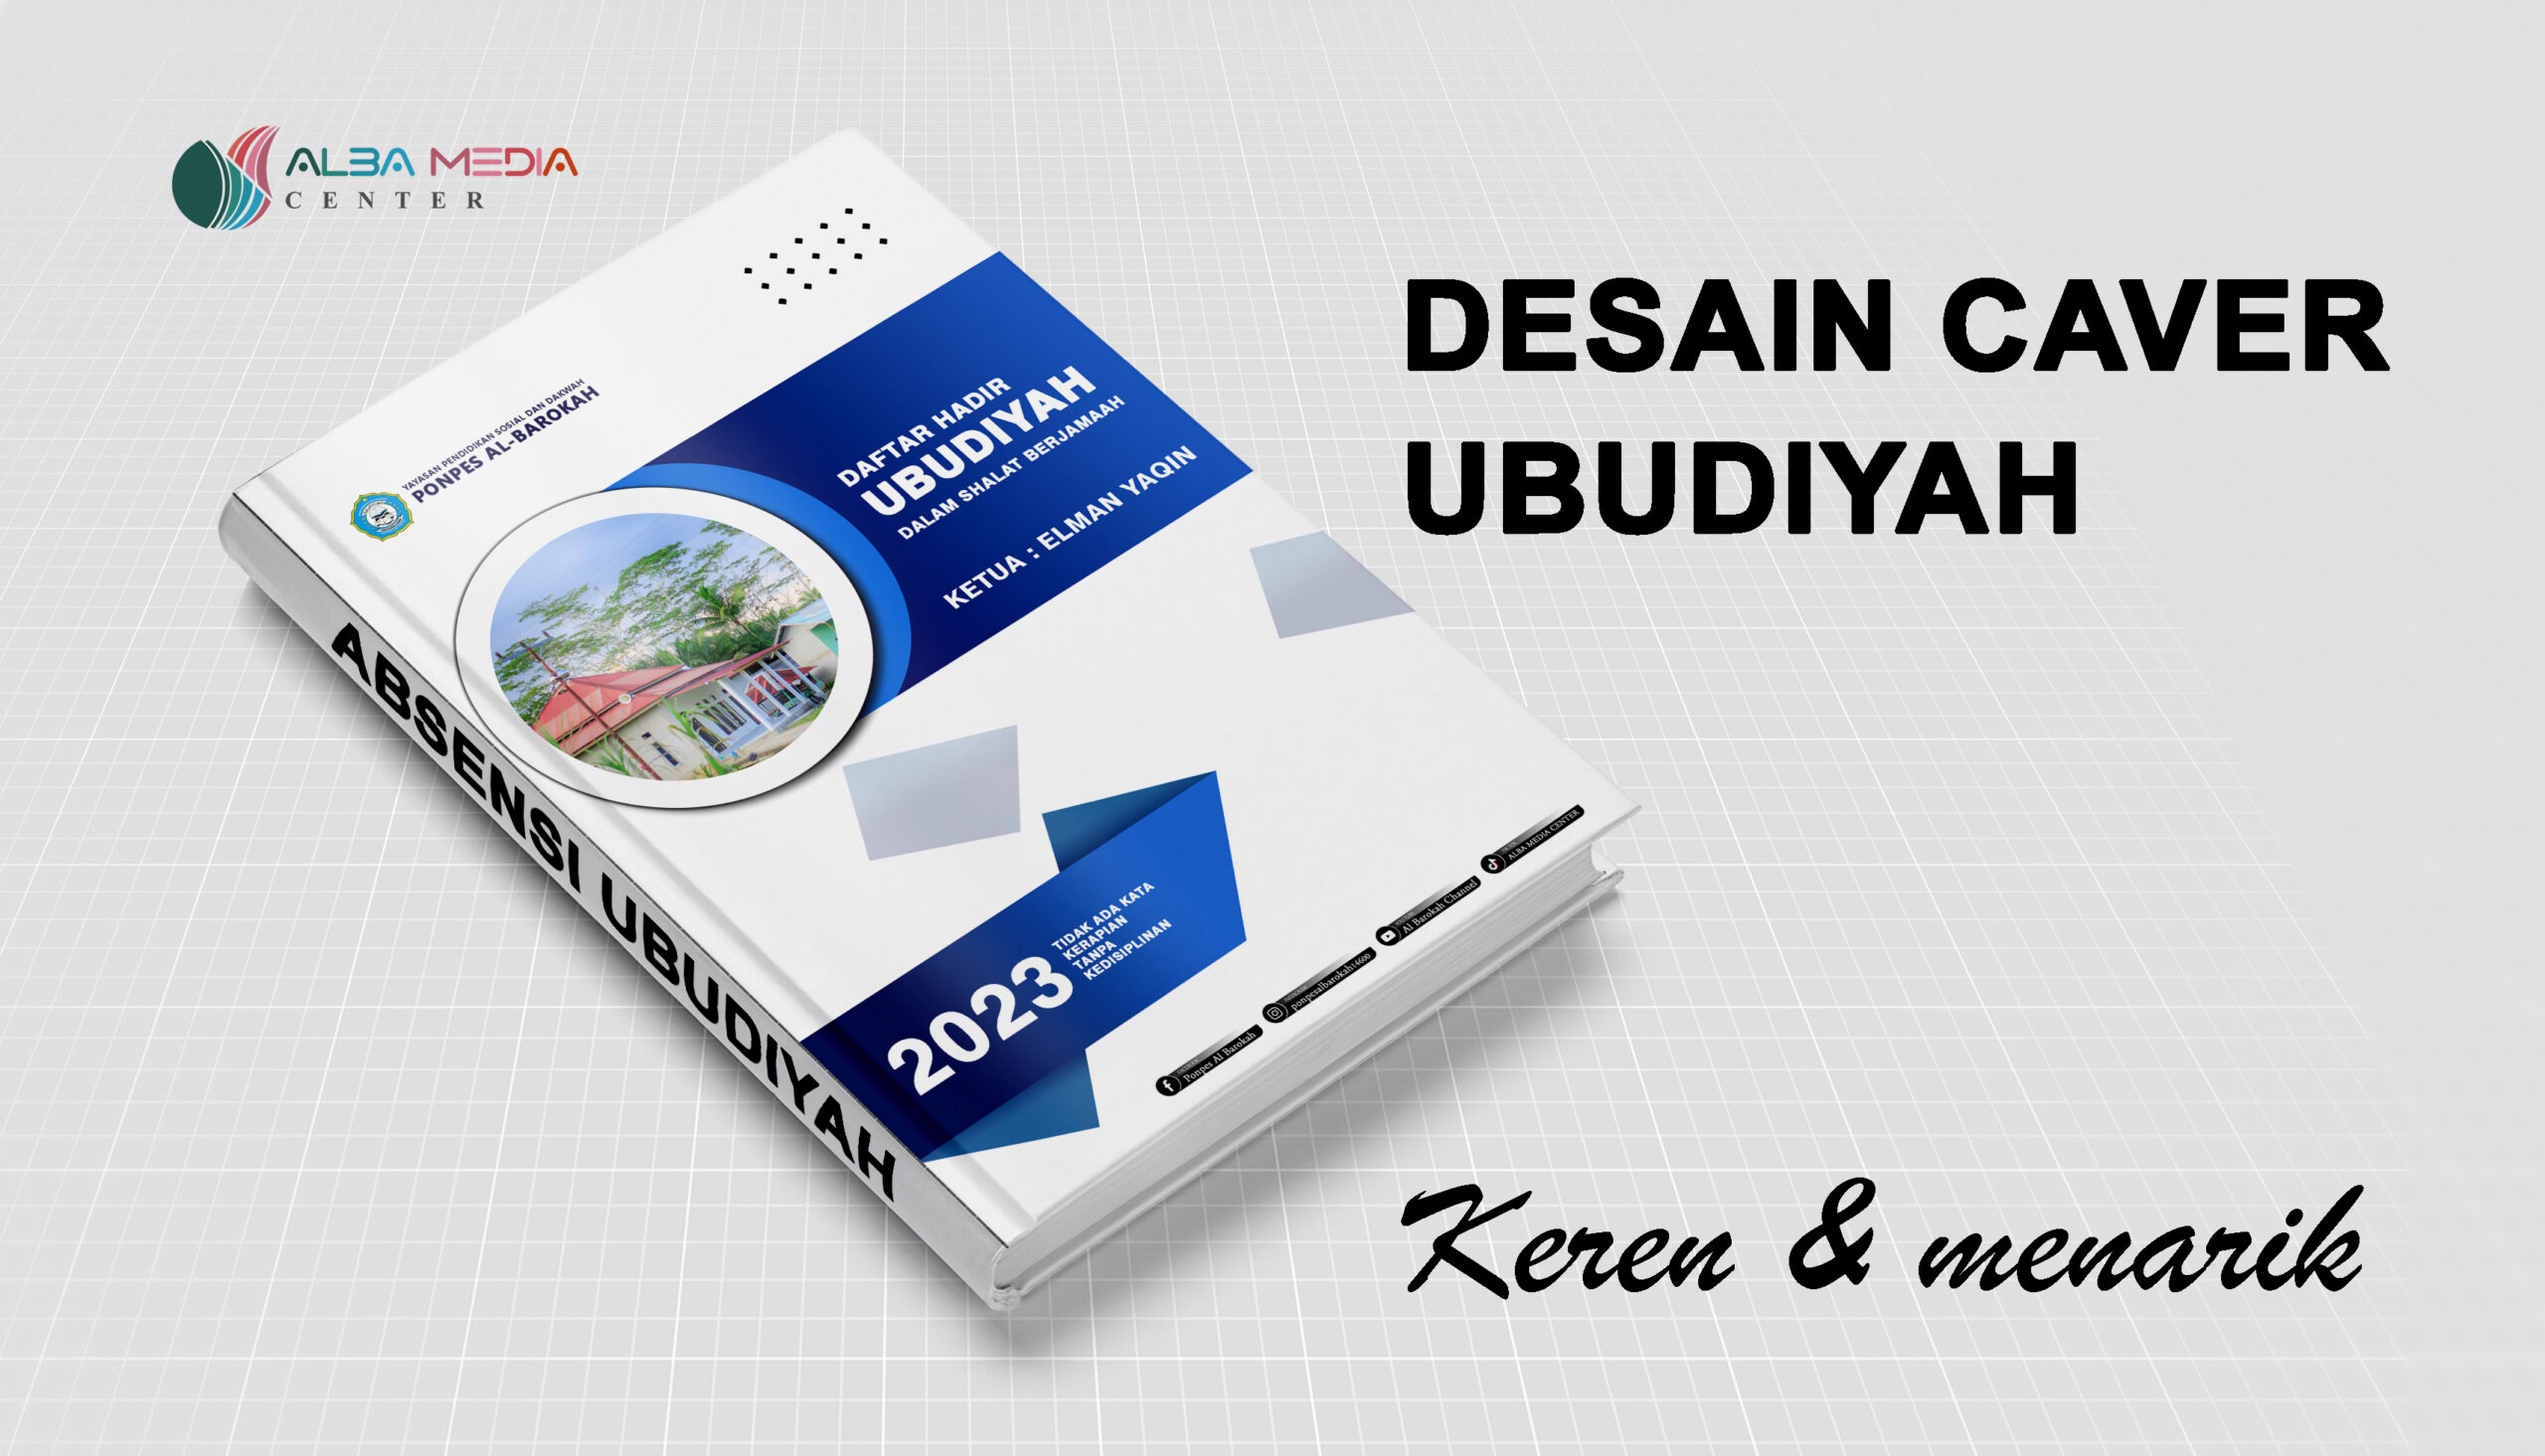 Desain Cover Ubudiyah Keren Terbaru